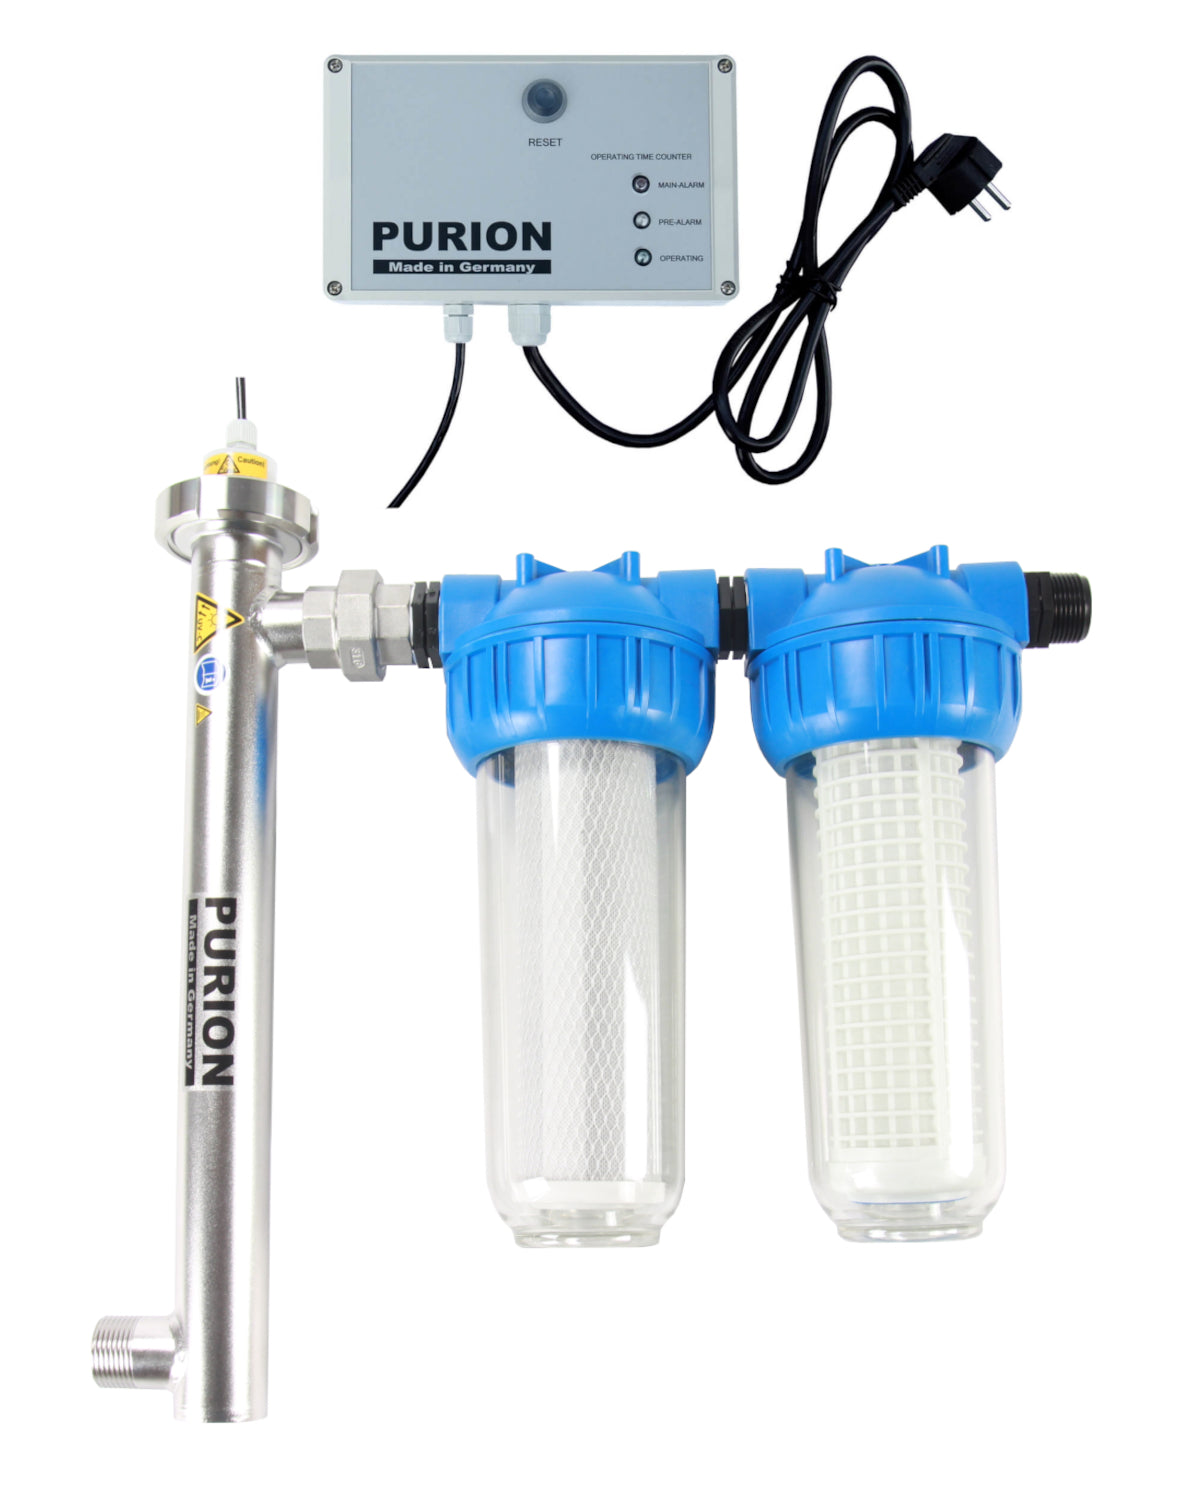 Das Wasseraufbereitungssystem PURION 1000 Starter der PURION GmbH verfügt über modernste UV-Filtertechnologie und sorgt so dafür, dass Ihr Trinkwasser perfekt gefiltert und sicher getrunken wird. Mit der Trinkwasserfilterfunktion können Sie darauf vertrauen